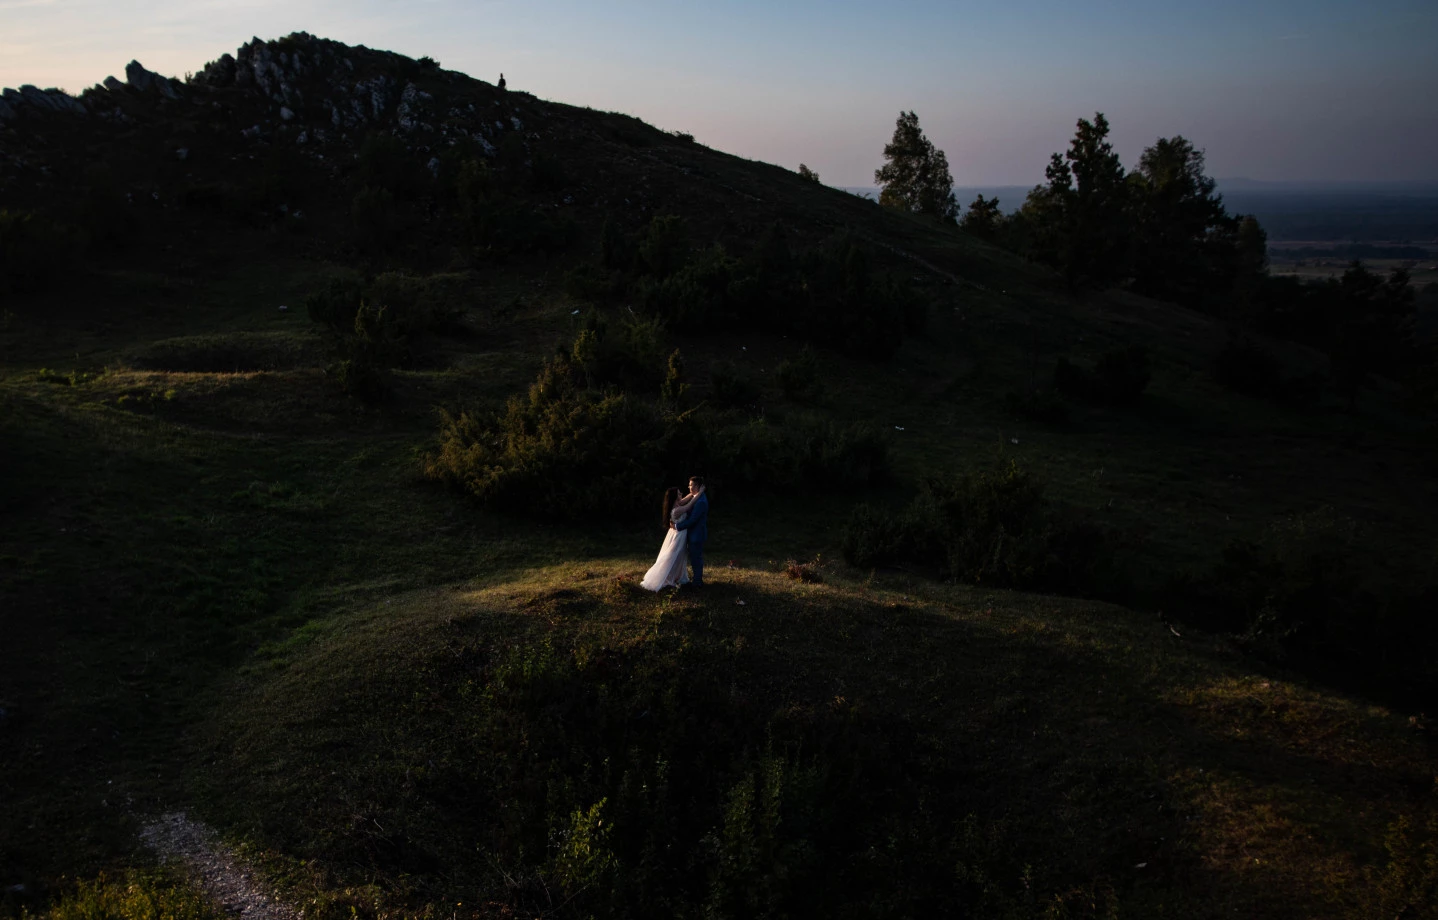 zdjęcia polaniec fotograf mariusz-zalesny portfolio zdjecia slubne inspiracje wesele plener slubny sesja slubna